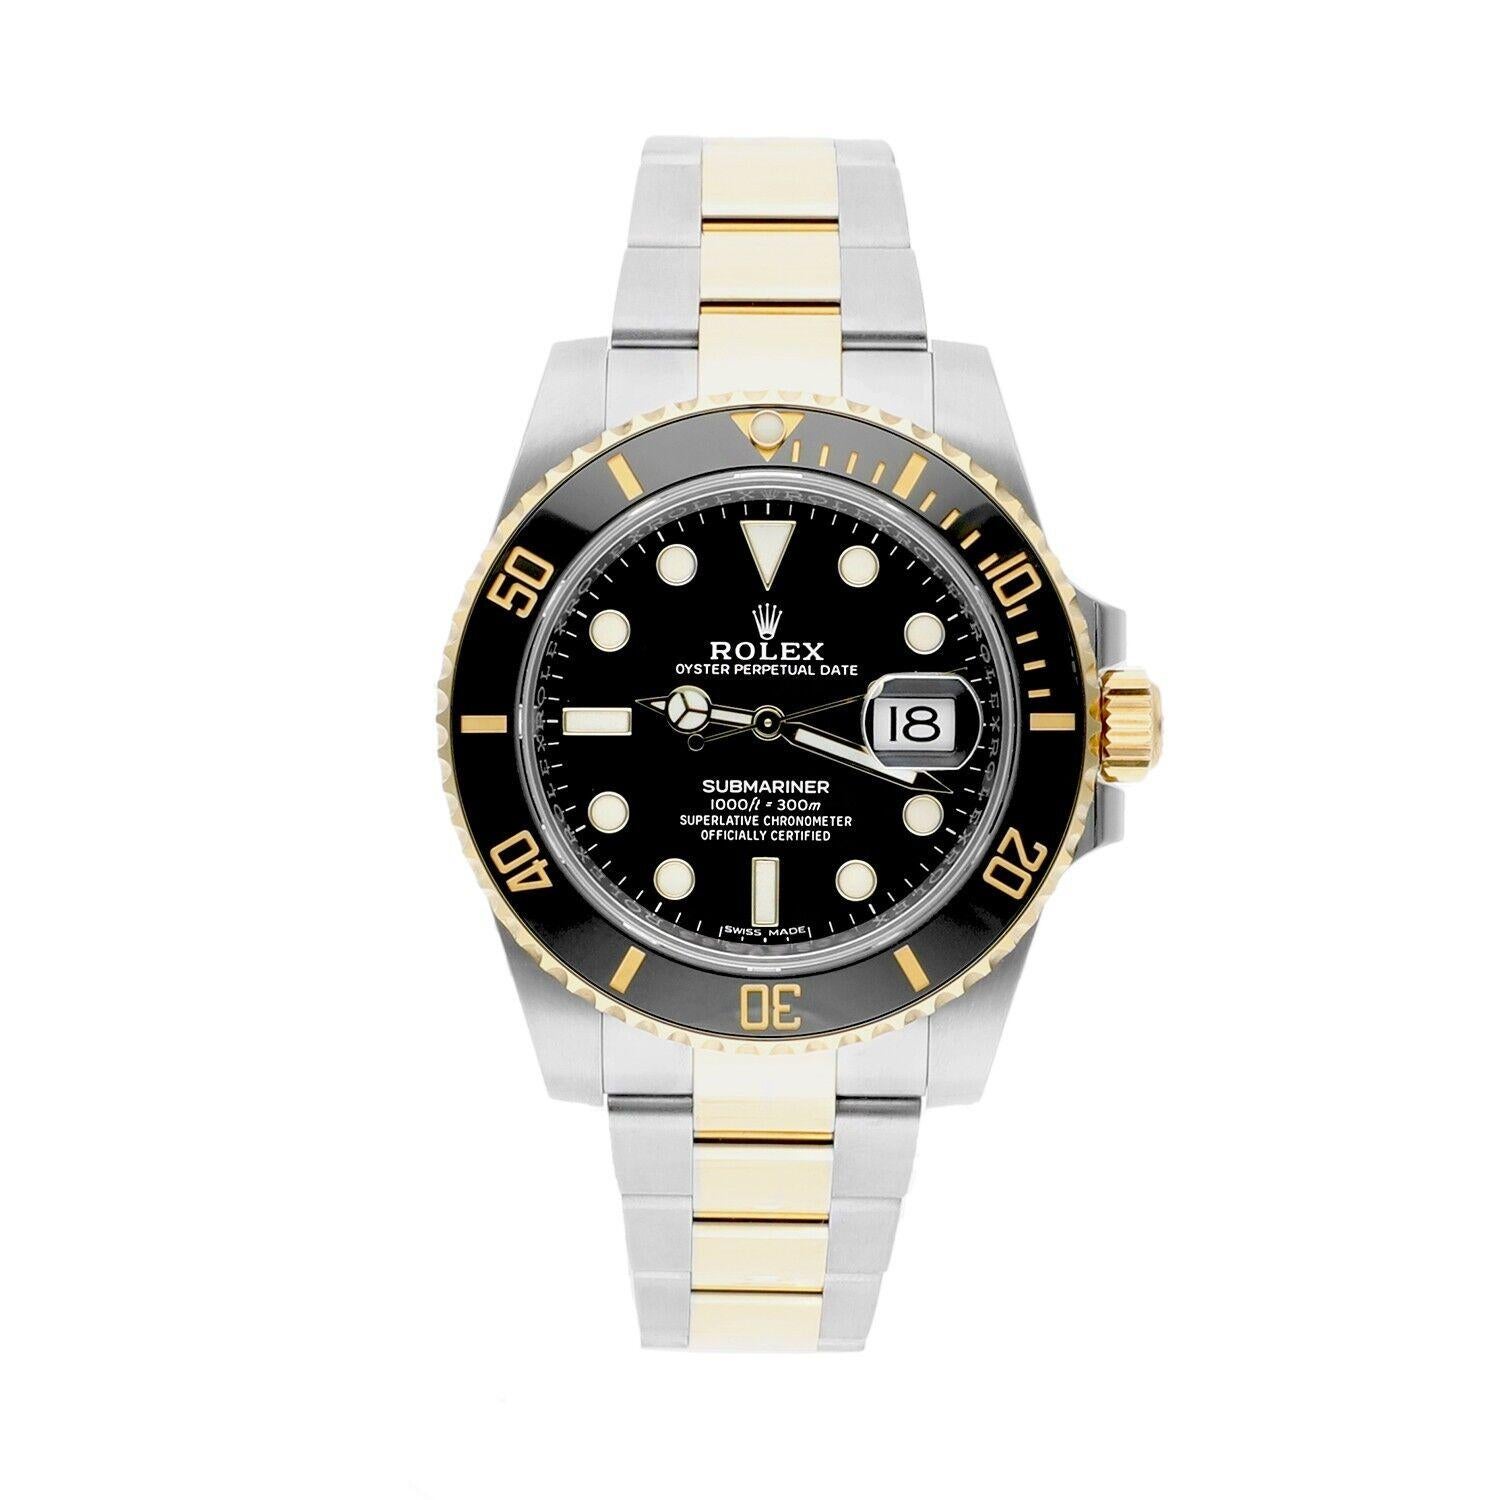 MINT CONDITION Rolex Submariner Date 116613LN Black Dial 18k Gold/Steel, Ceramic Bezel, Complete Watch

Cette montre a été professionnellement polie, révisée et est en excellent état général. Il n'y a absolument aucune rayure ou imperfection